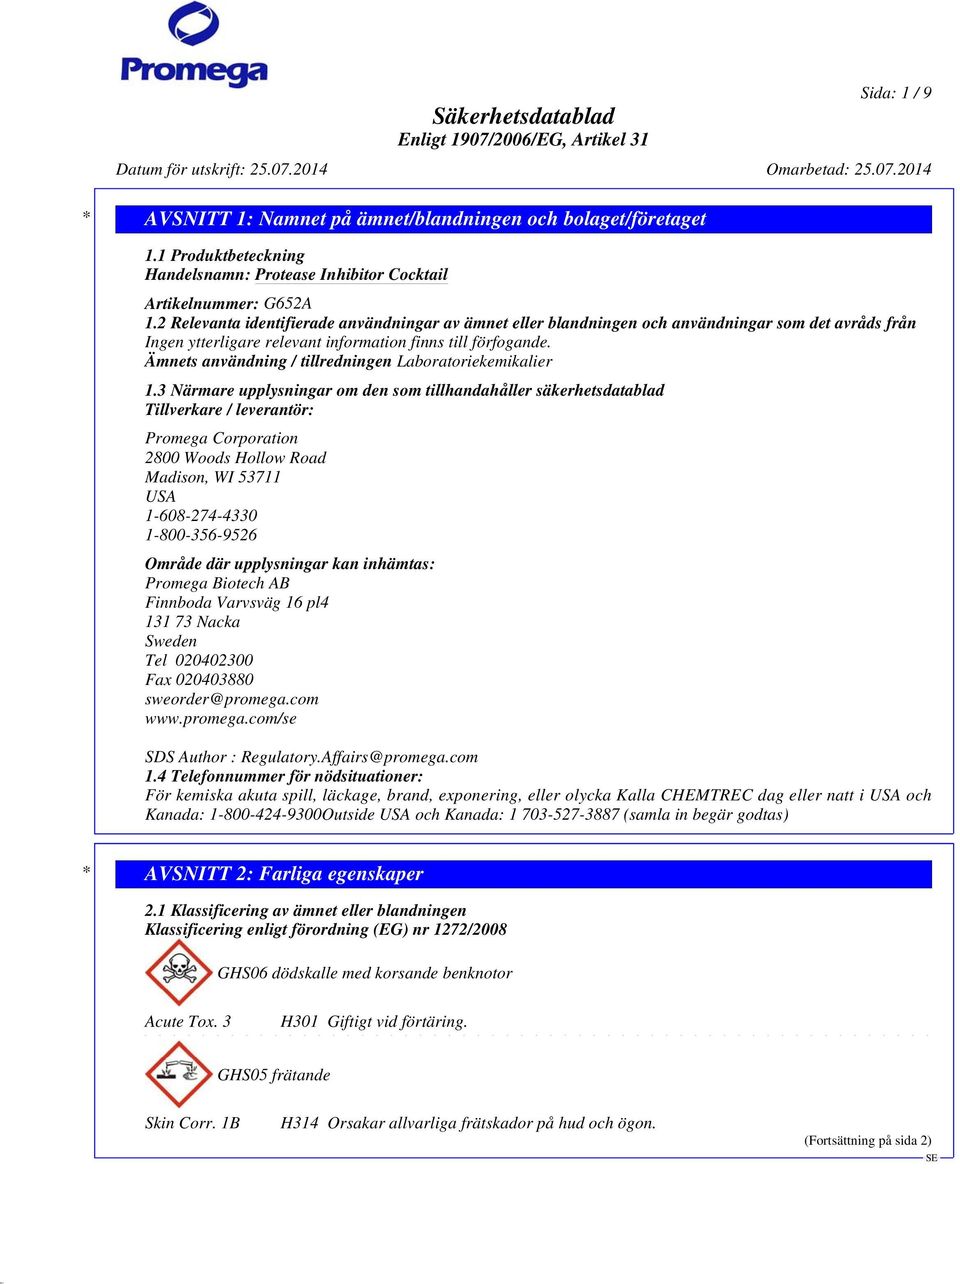 Ämnets användning / tillredningen Laboratoriekemikalier 1.